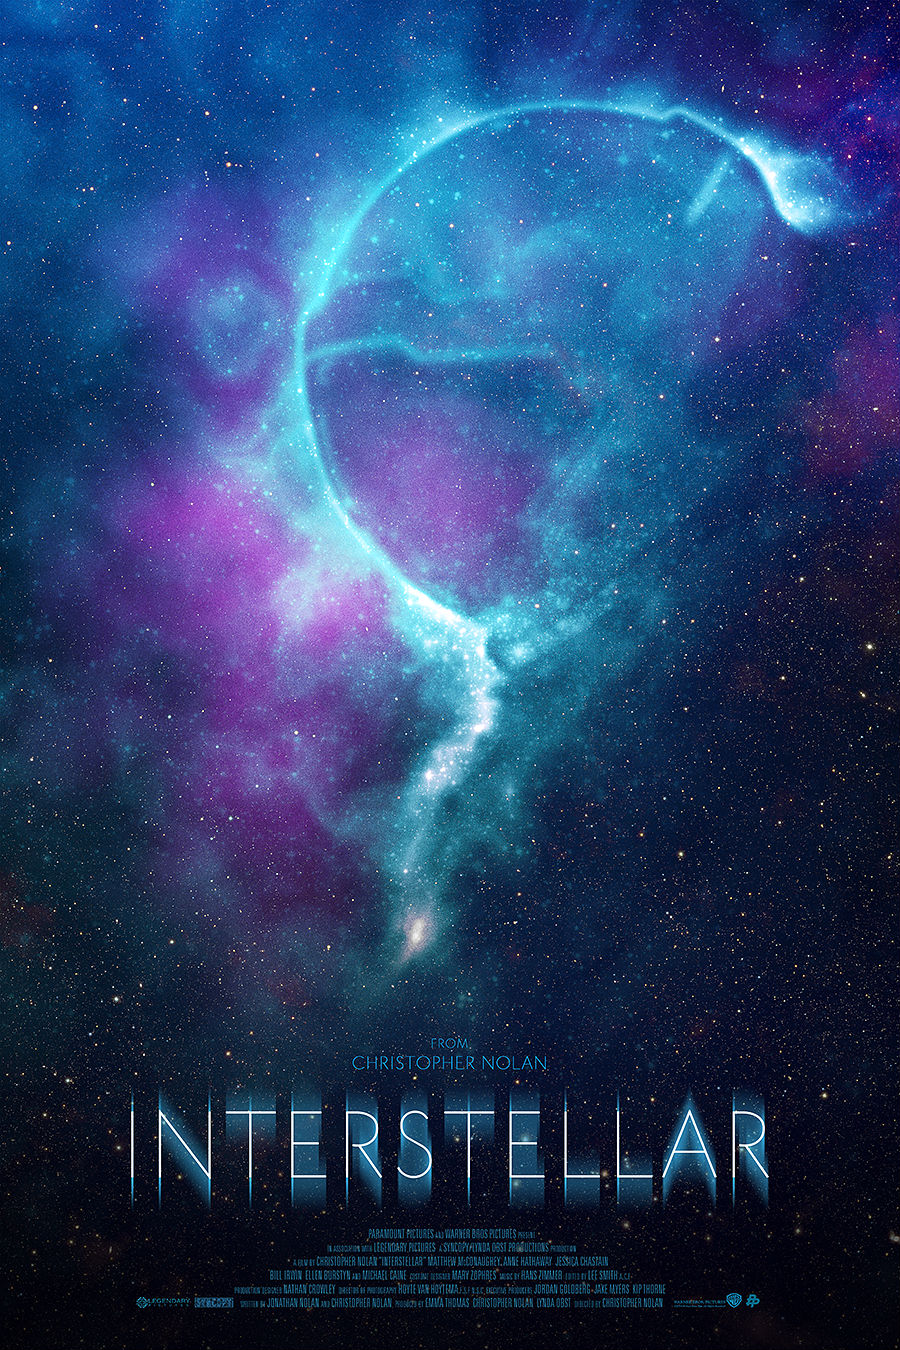 John-Aslarona-Interstellar.jpg